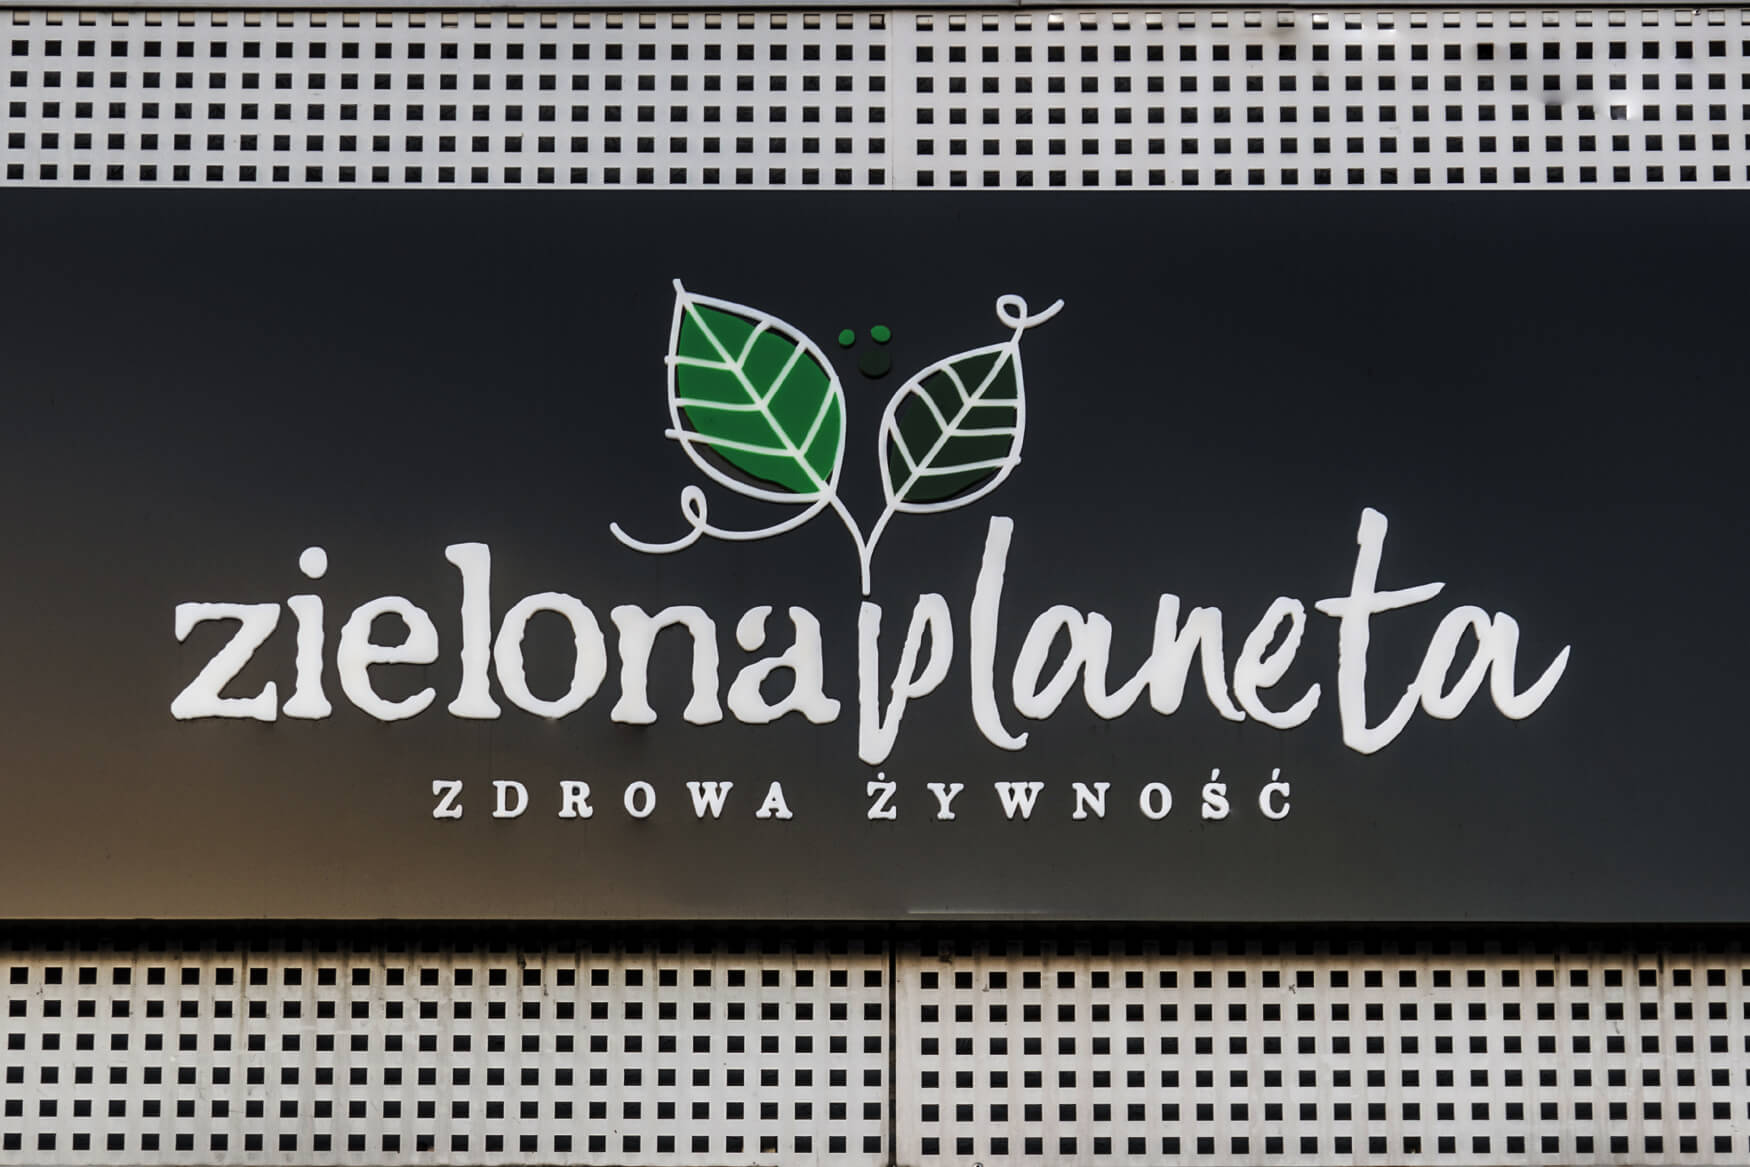 planète verte - Zielona Planeta - coffret publicitaire lumineux avec lettres et logo spatial